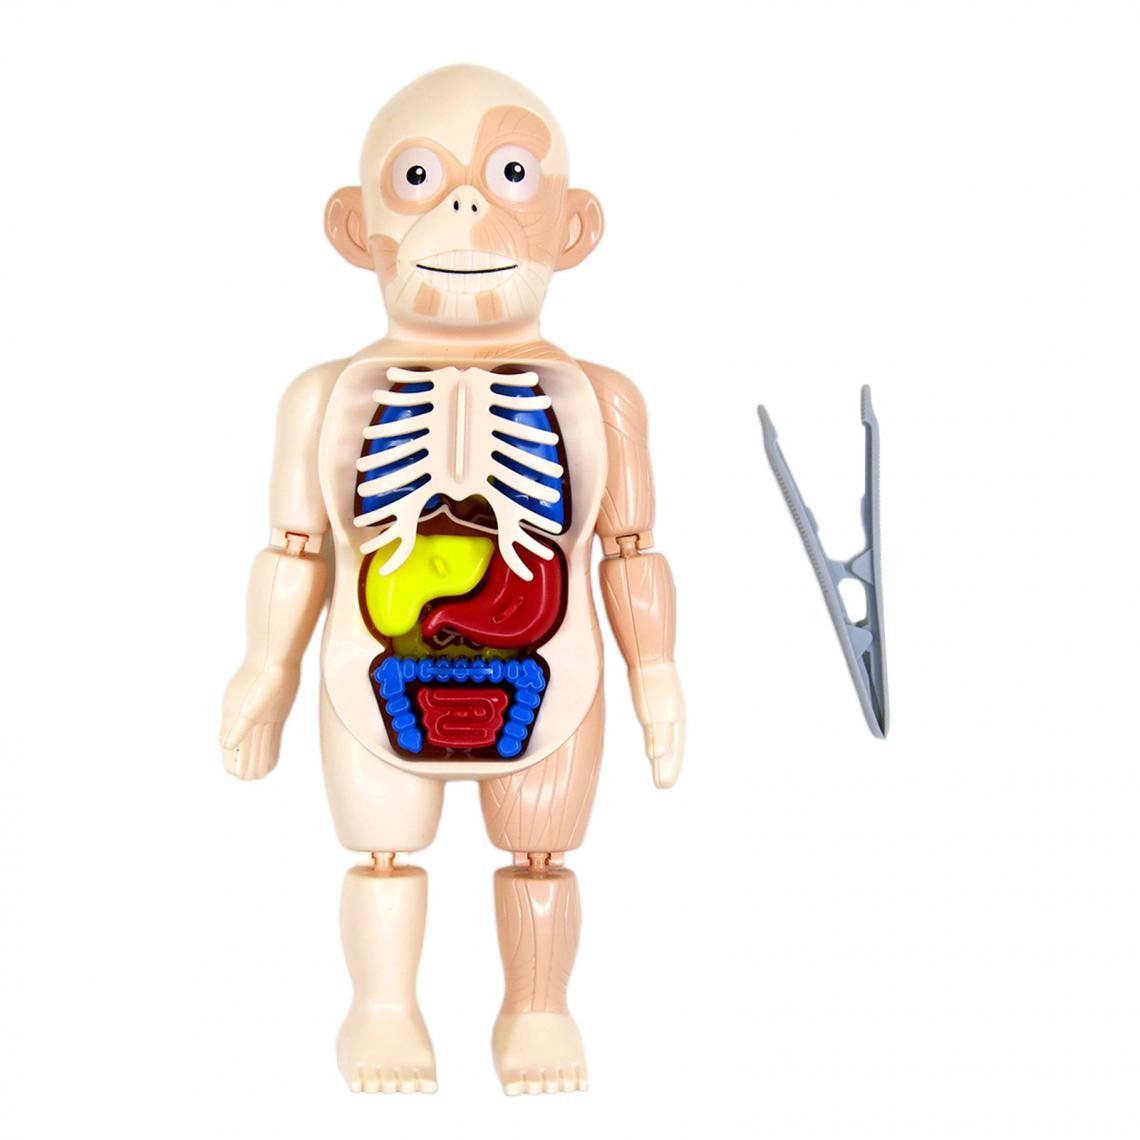 marque generique - Réaliste 3D Corps Humain avec Organes Anatomie Éducatifs BRICOLAGE Jouets Organe Du Corps pour La Science Démonstration En Salle de Classe - Jeux éducatifs